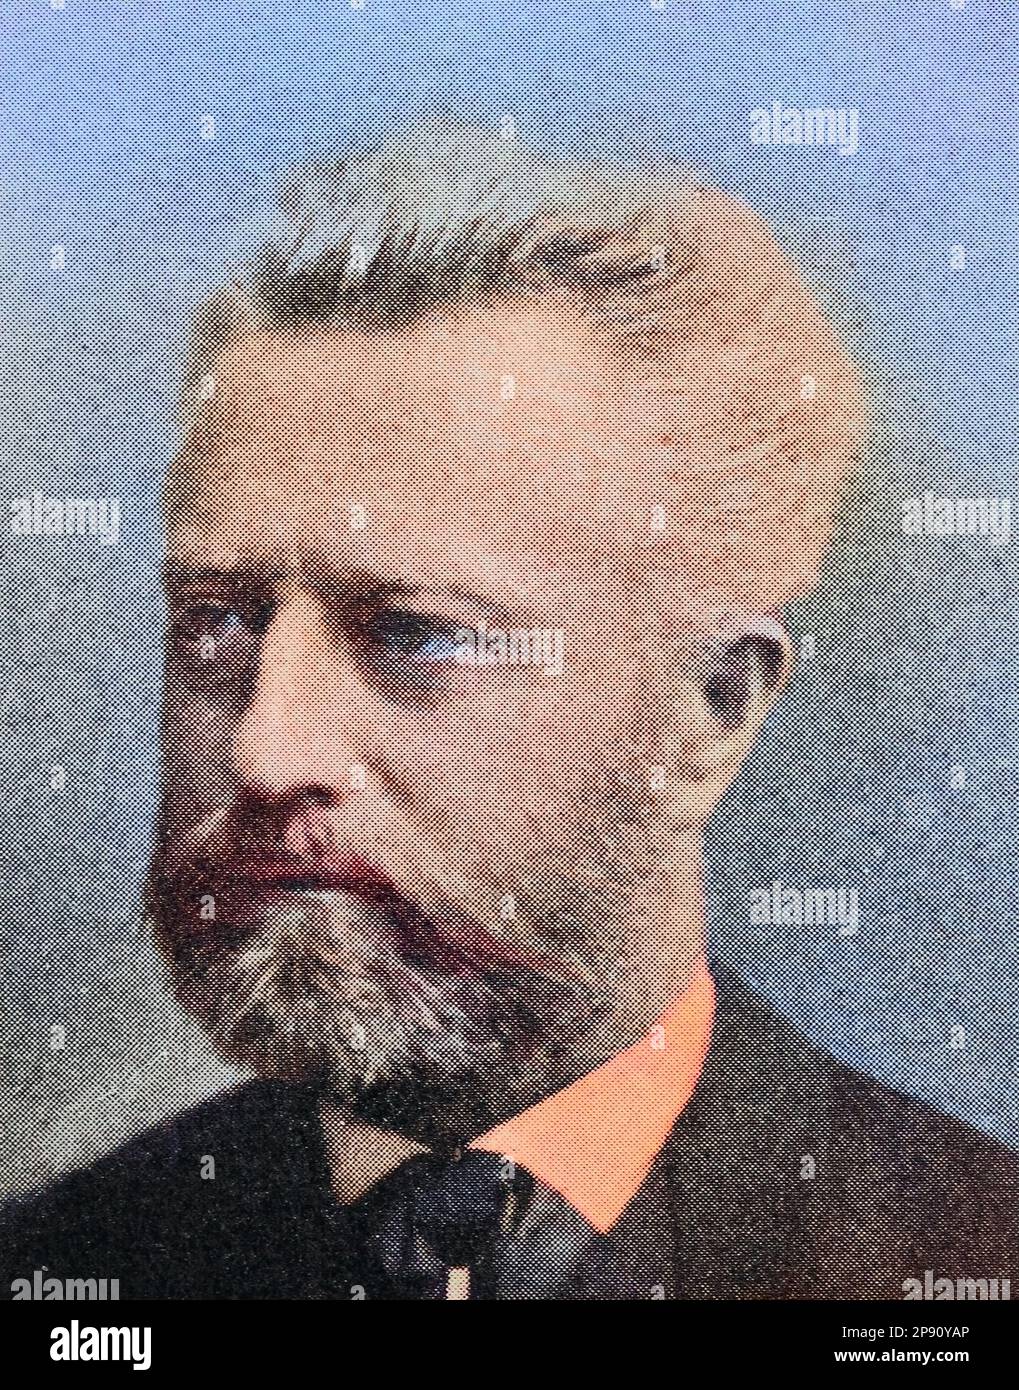 Christian Friedrich Georg Wilhelm Oncken (19. Dezember 1838 - 11. August 1905) war ein deutscher Historiker, Historisch, digital restaurierte Reproduktion von einer Vorlage aus dem 19. Jahrhundert Stock Photo